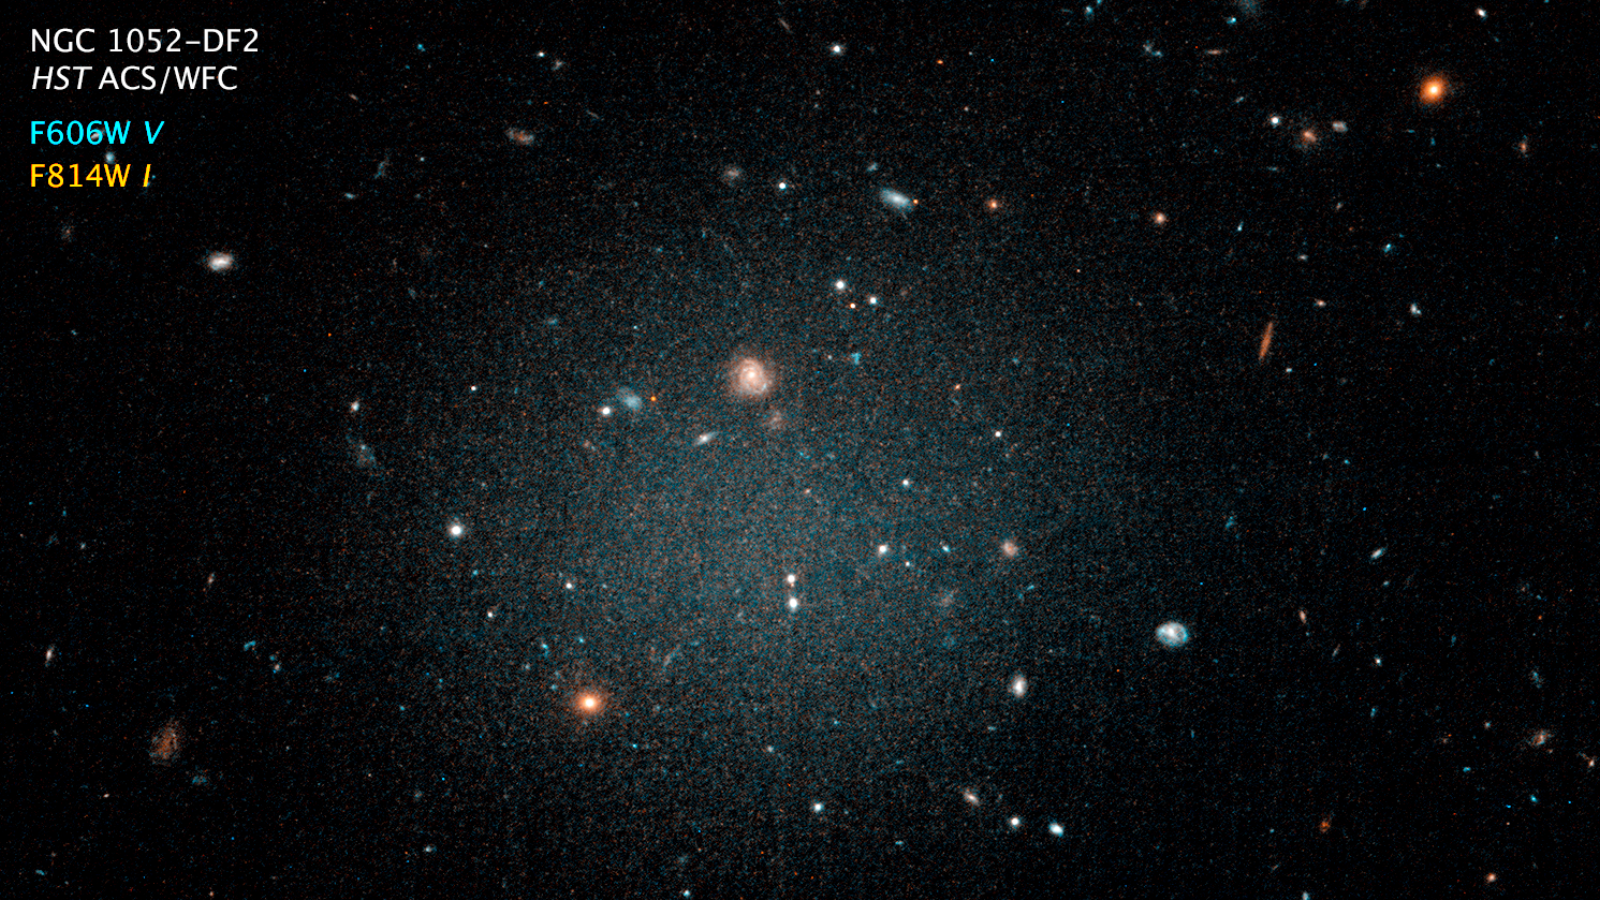 
 المجرة NGC1052-DF2، أنها تلك الهالة الضبابية التي تراها منتصف الصورة، وهي بحجم درب التبانة تقريبًا، رغم ذلك تحتوي فقط، على 1\200 من كم المادة الموجود في درب التبانة، كذلك لا تحتوي على مركز أكثر كثافة، أو أذرع، أو ثقب أسود فائق الكتلة في مركزها،
 (مواقع التواصل)